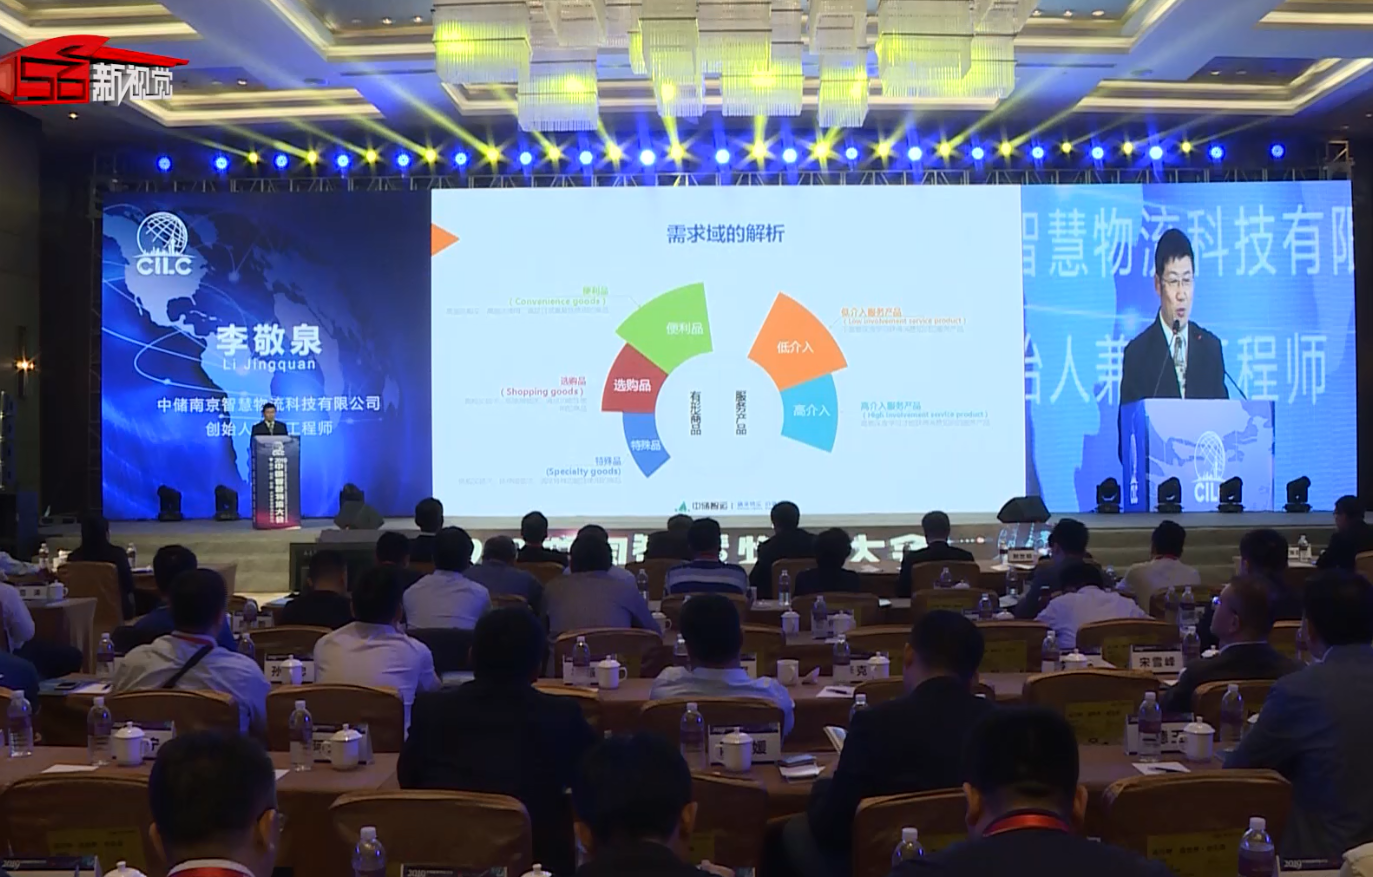 中储南京智慧物流科技有限公司创始人兼总工程师李敬泉发表演讲